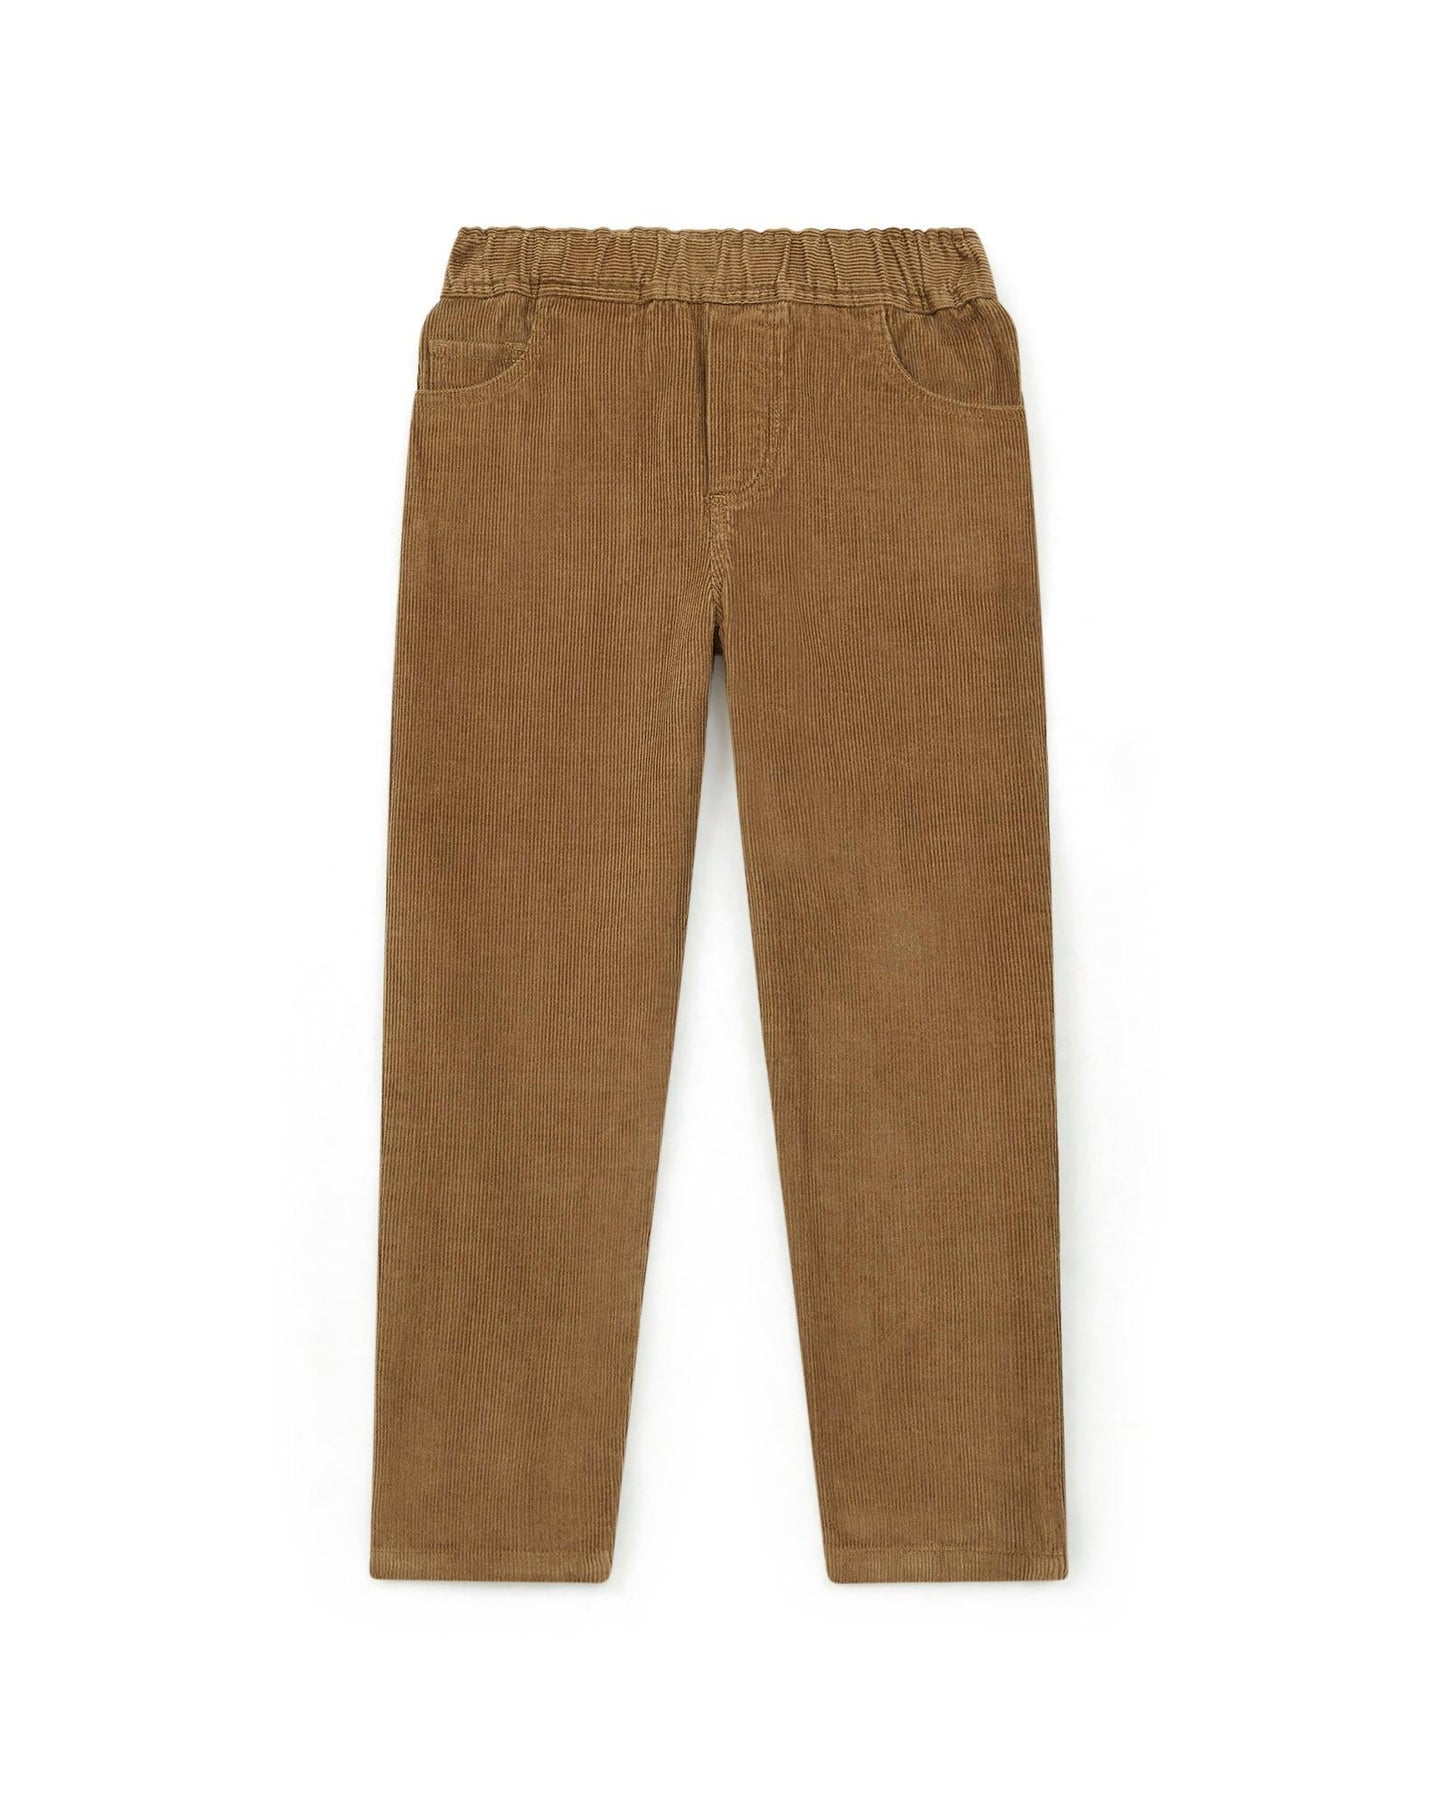 Trousers - Fraca brown in Corduroy